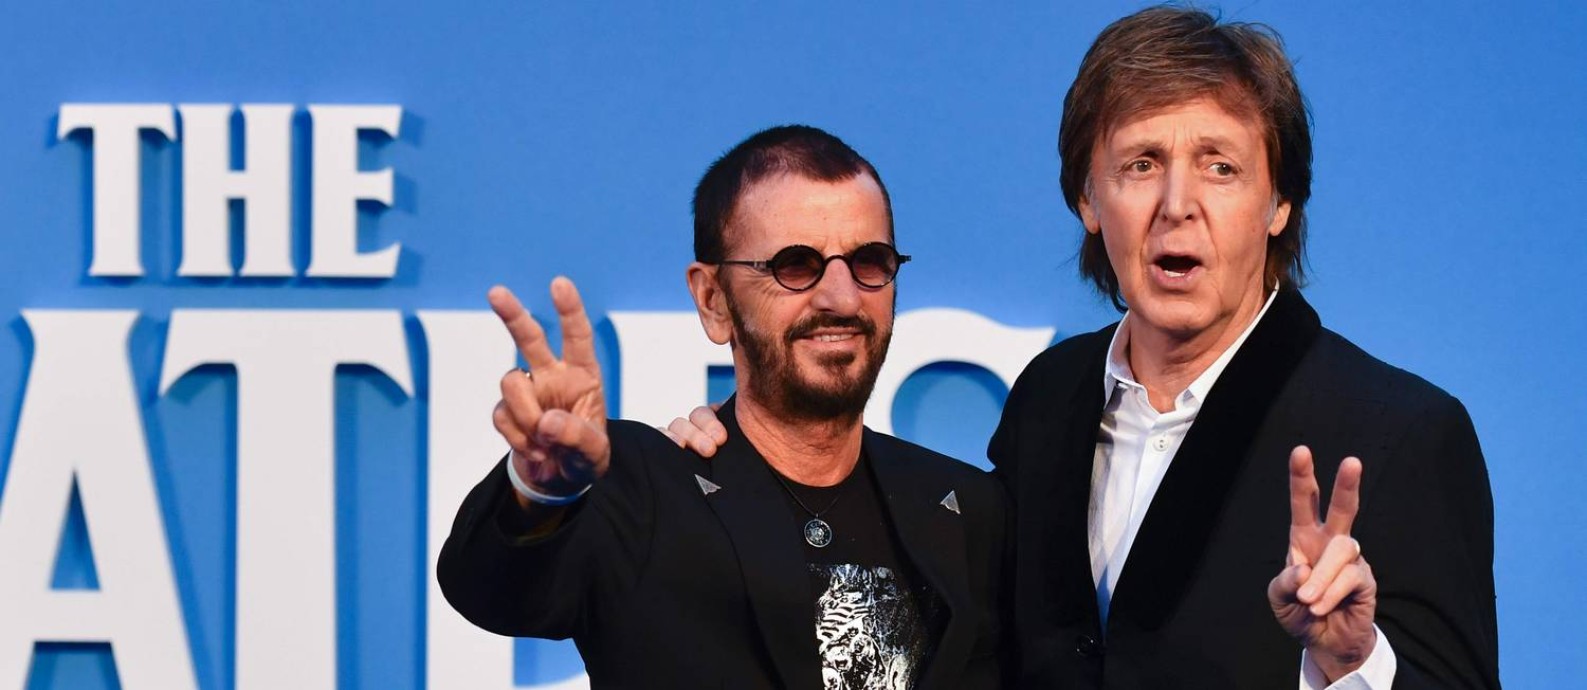 Ringo Starr e Paul McCartney na première de 'Eight days a week' Foto: BEN STANSALL / AFP